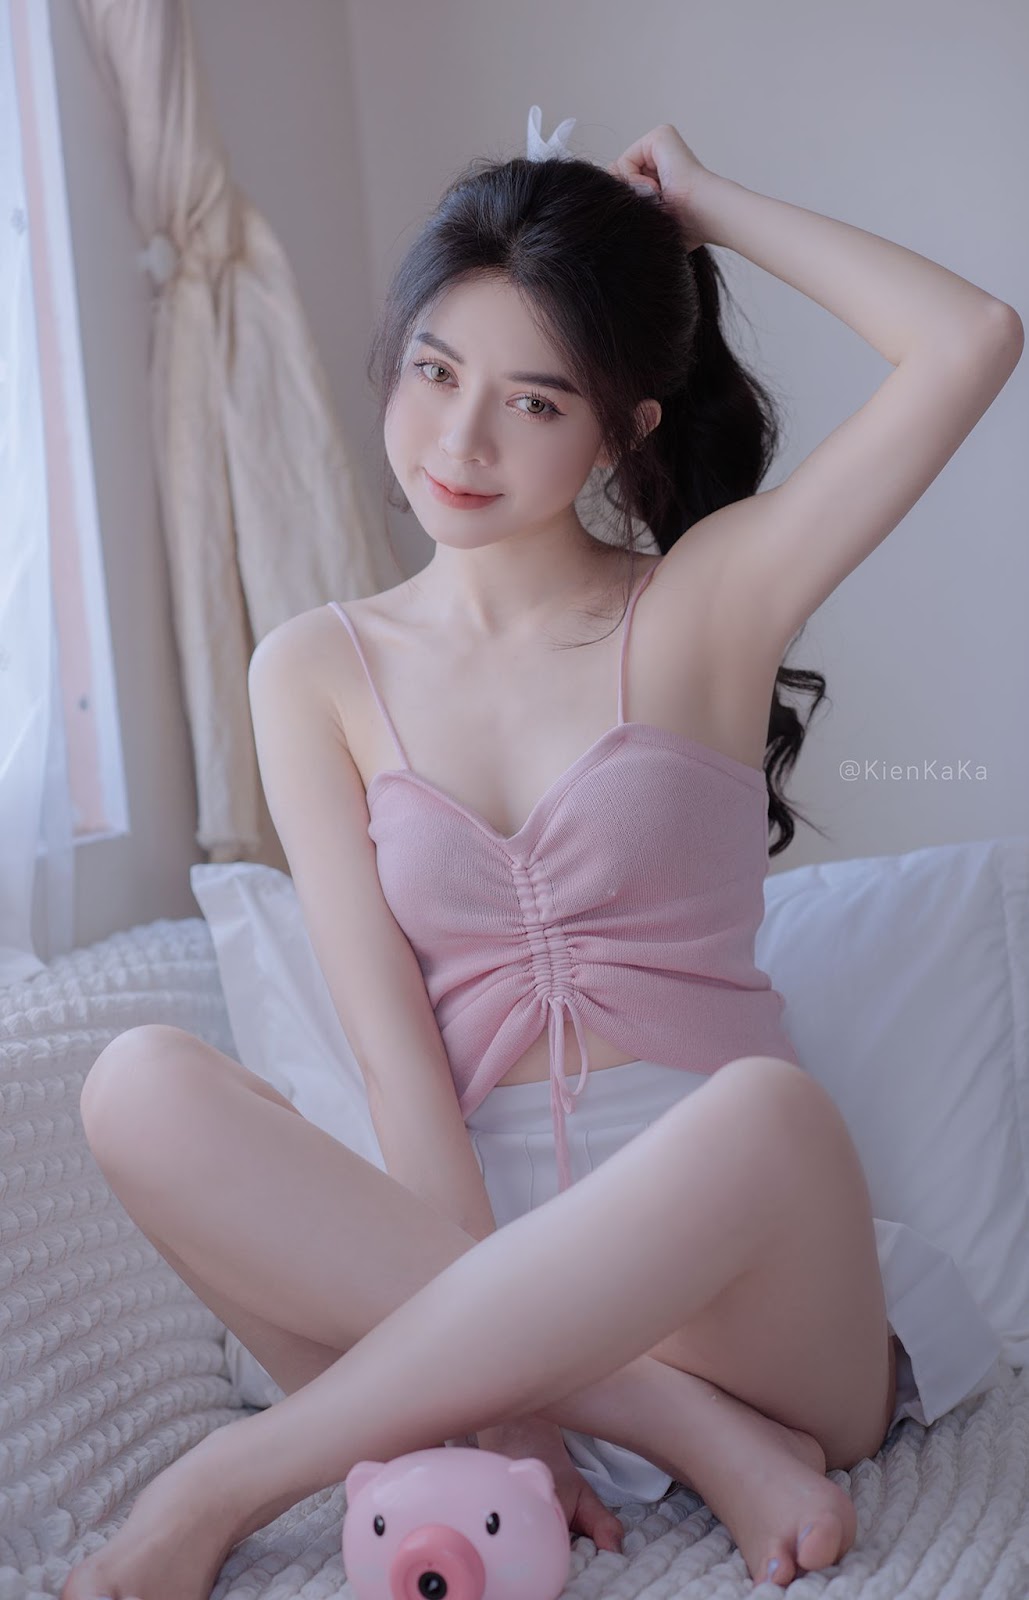 Tiểu sử hot girl Thúy Hằng - Nữ streamer kiêm người mẫu ảnh xinh xắn - 14